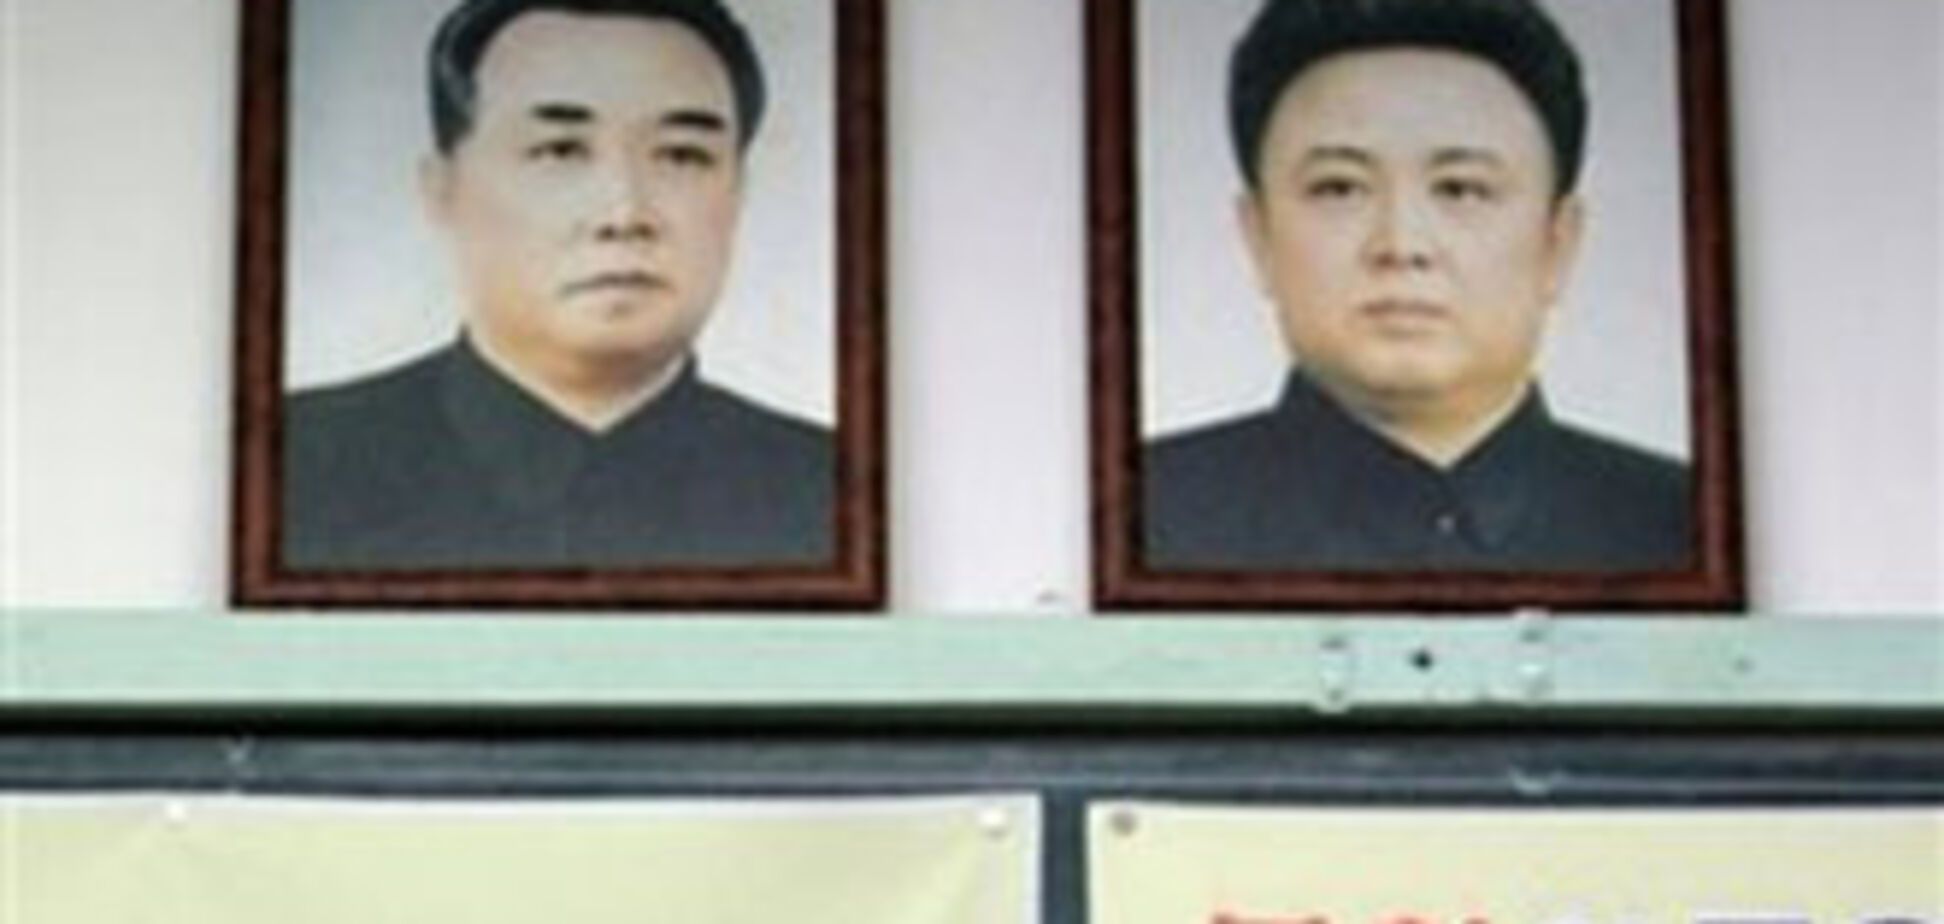 Моряки спасли портрет Ким Чен Ира ценой собственной жизни